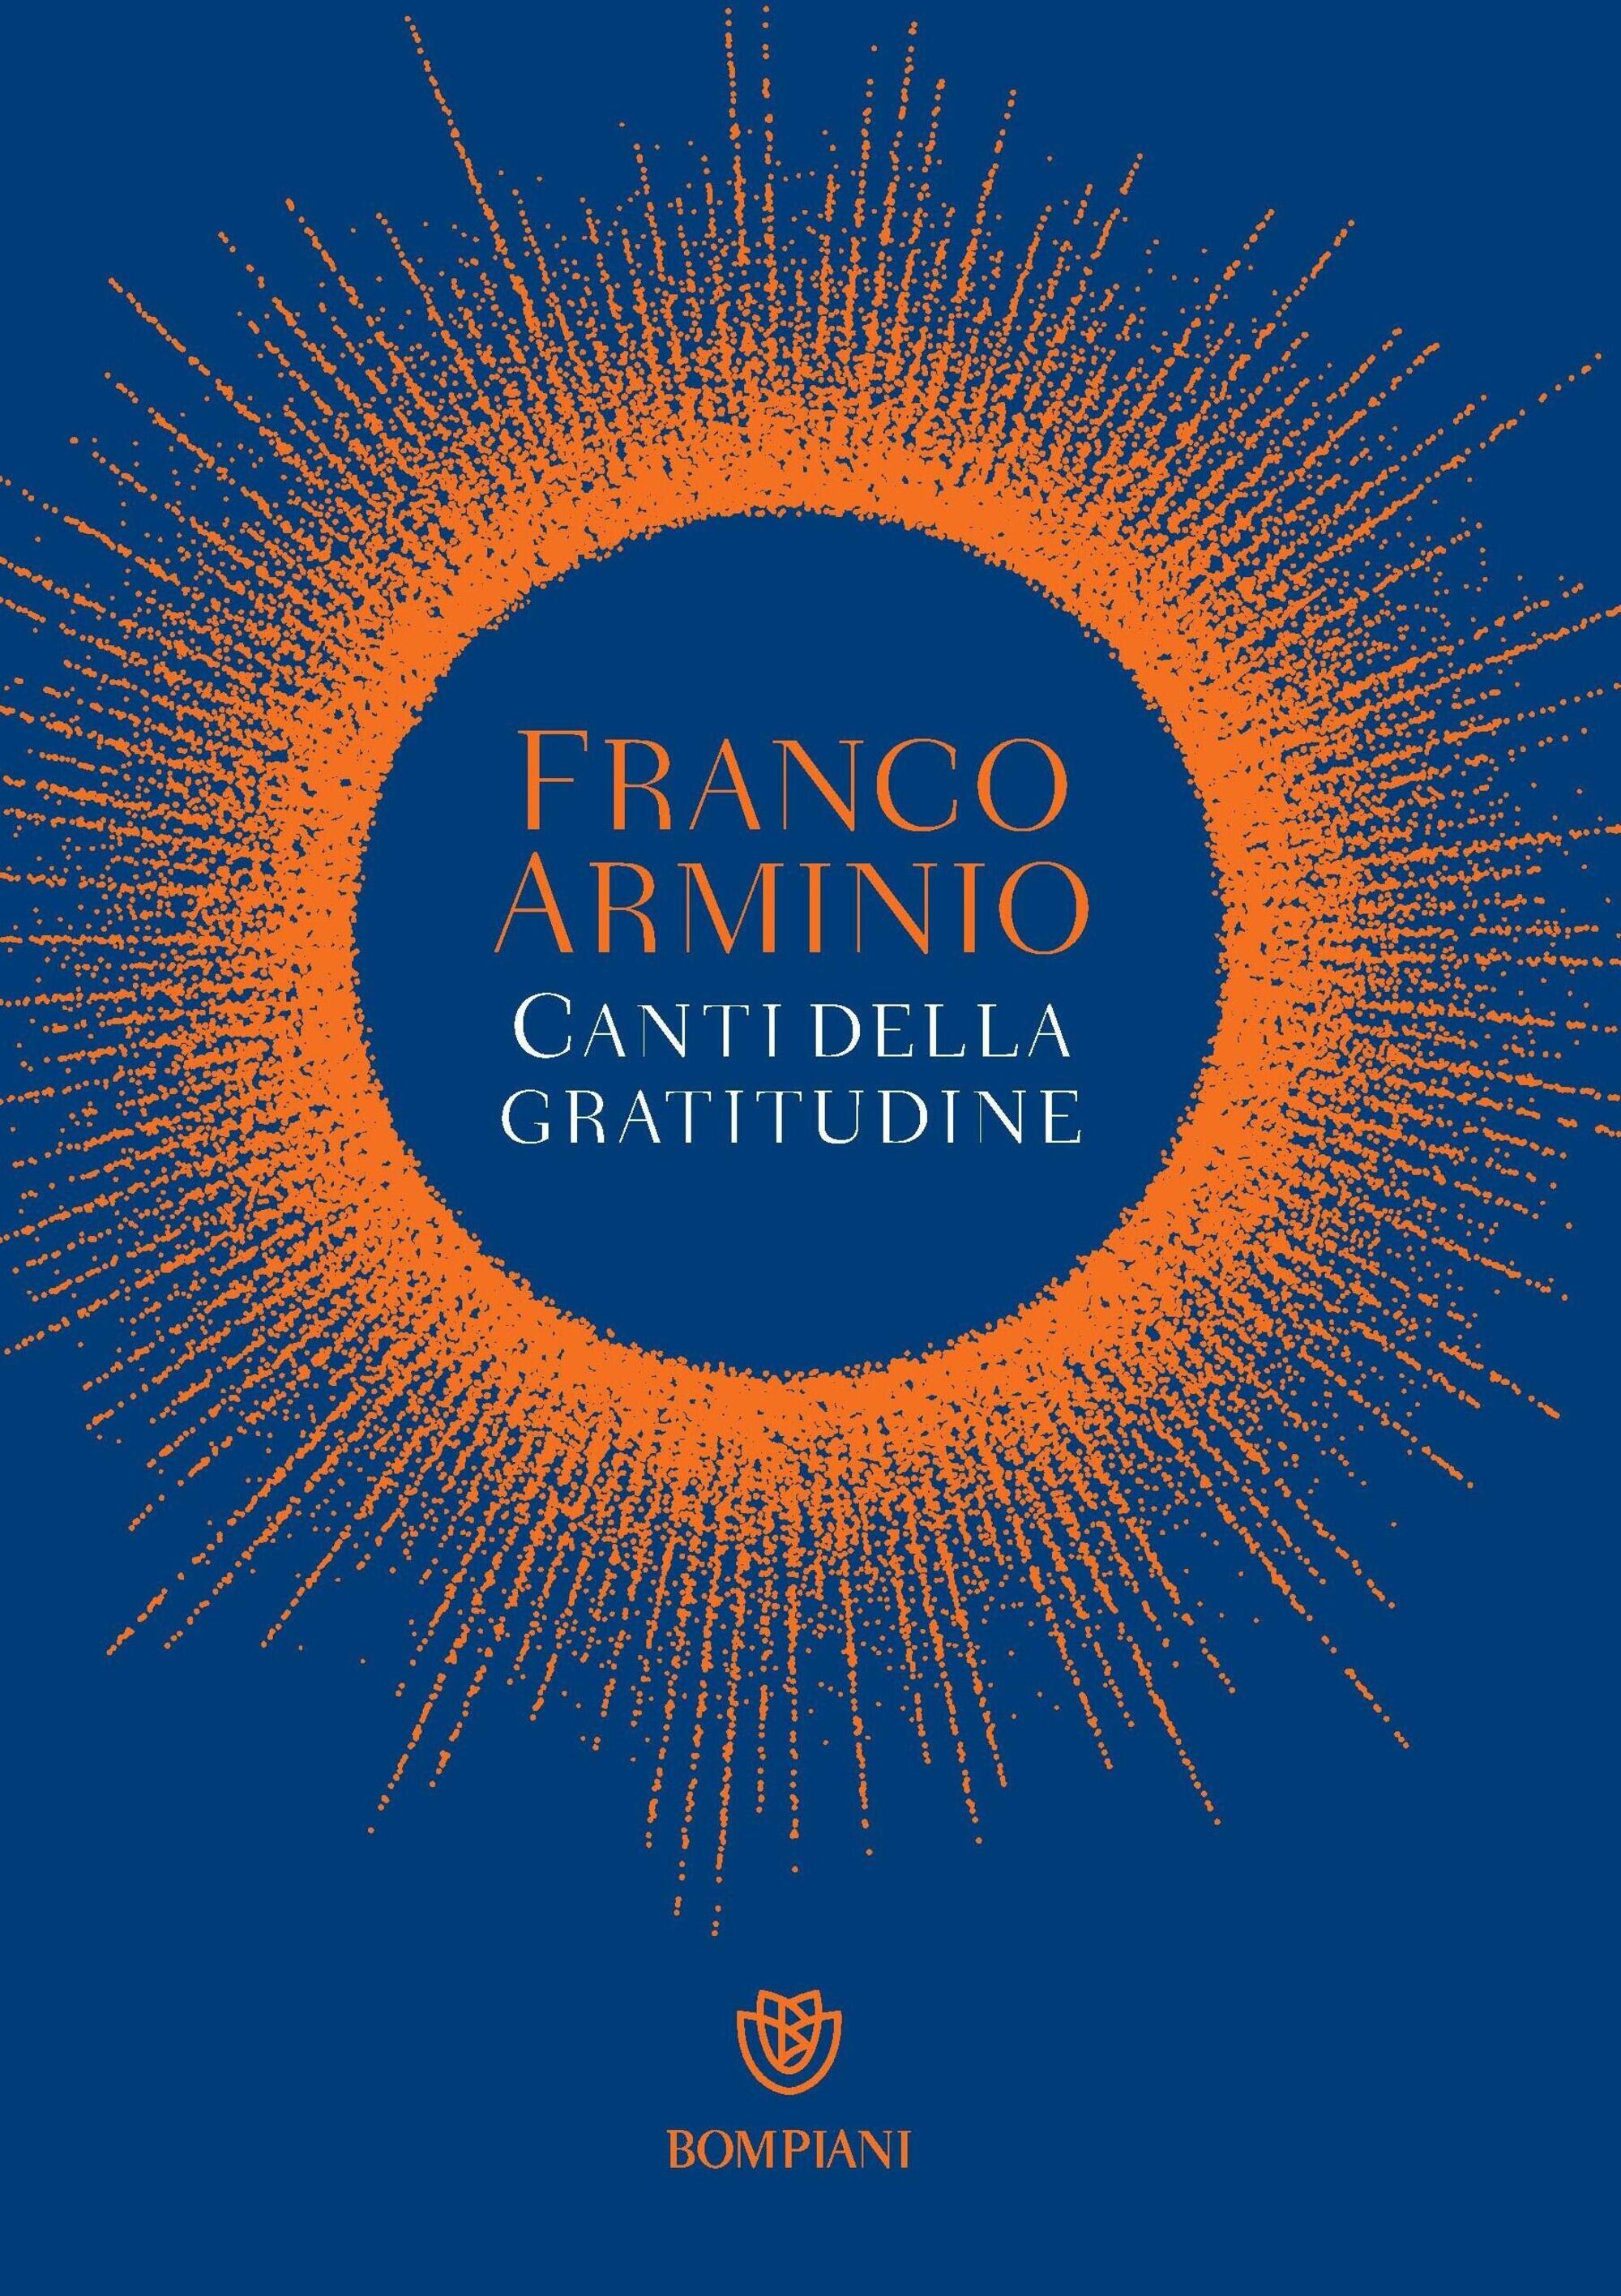 Canti della gratitudine di Franco Arminio (Bompiani)